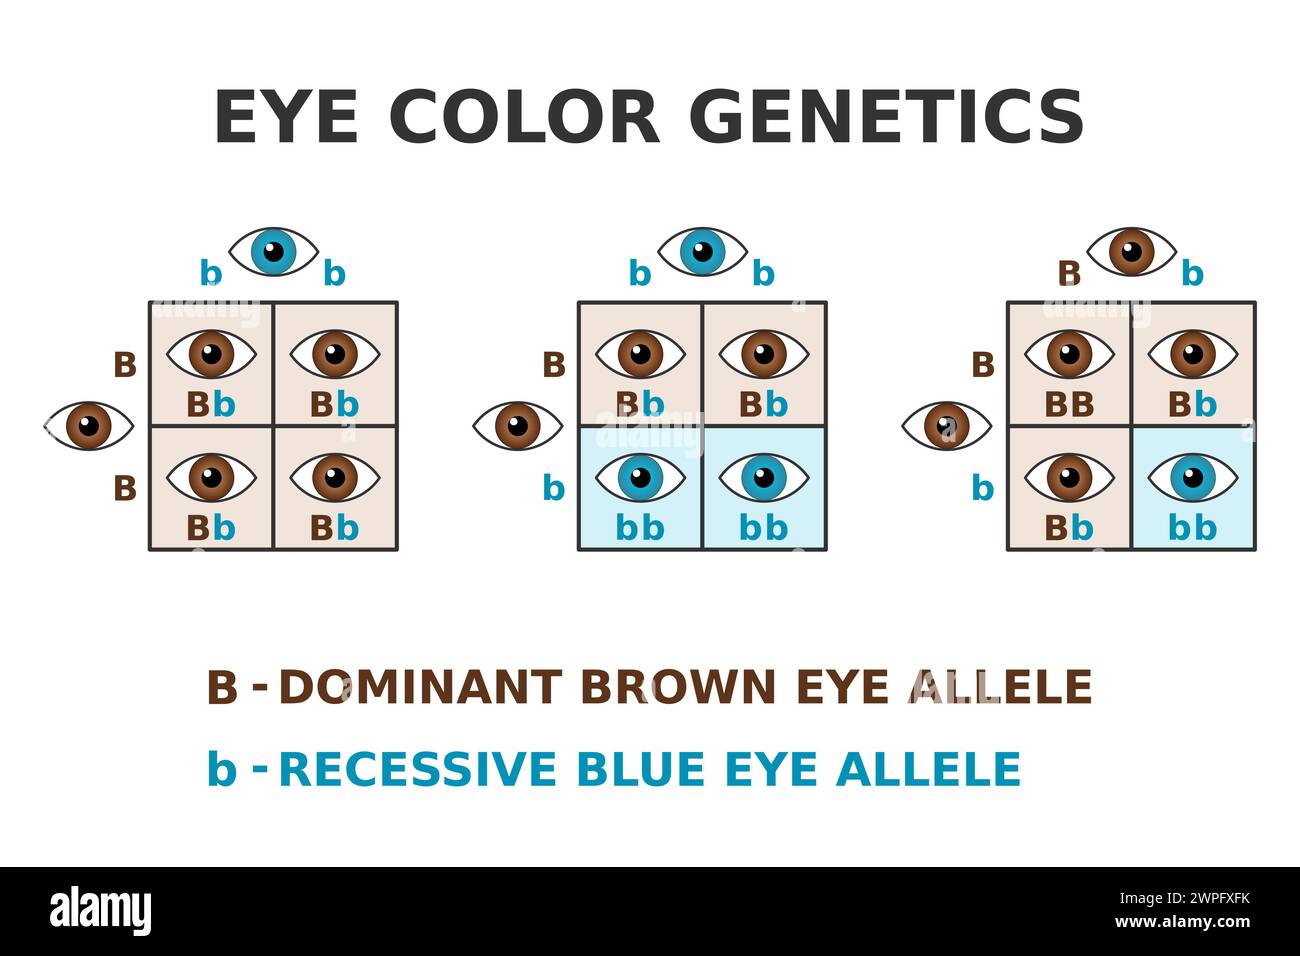 Augenfarbgenetik. Braune Augen und blaue Augen kreuzen sich. Dominantes braunes Allel. Rezessives blaues Allel. Punnett Square. Mendel-Erbschaft. Vektor Stock Vektor